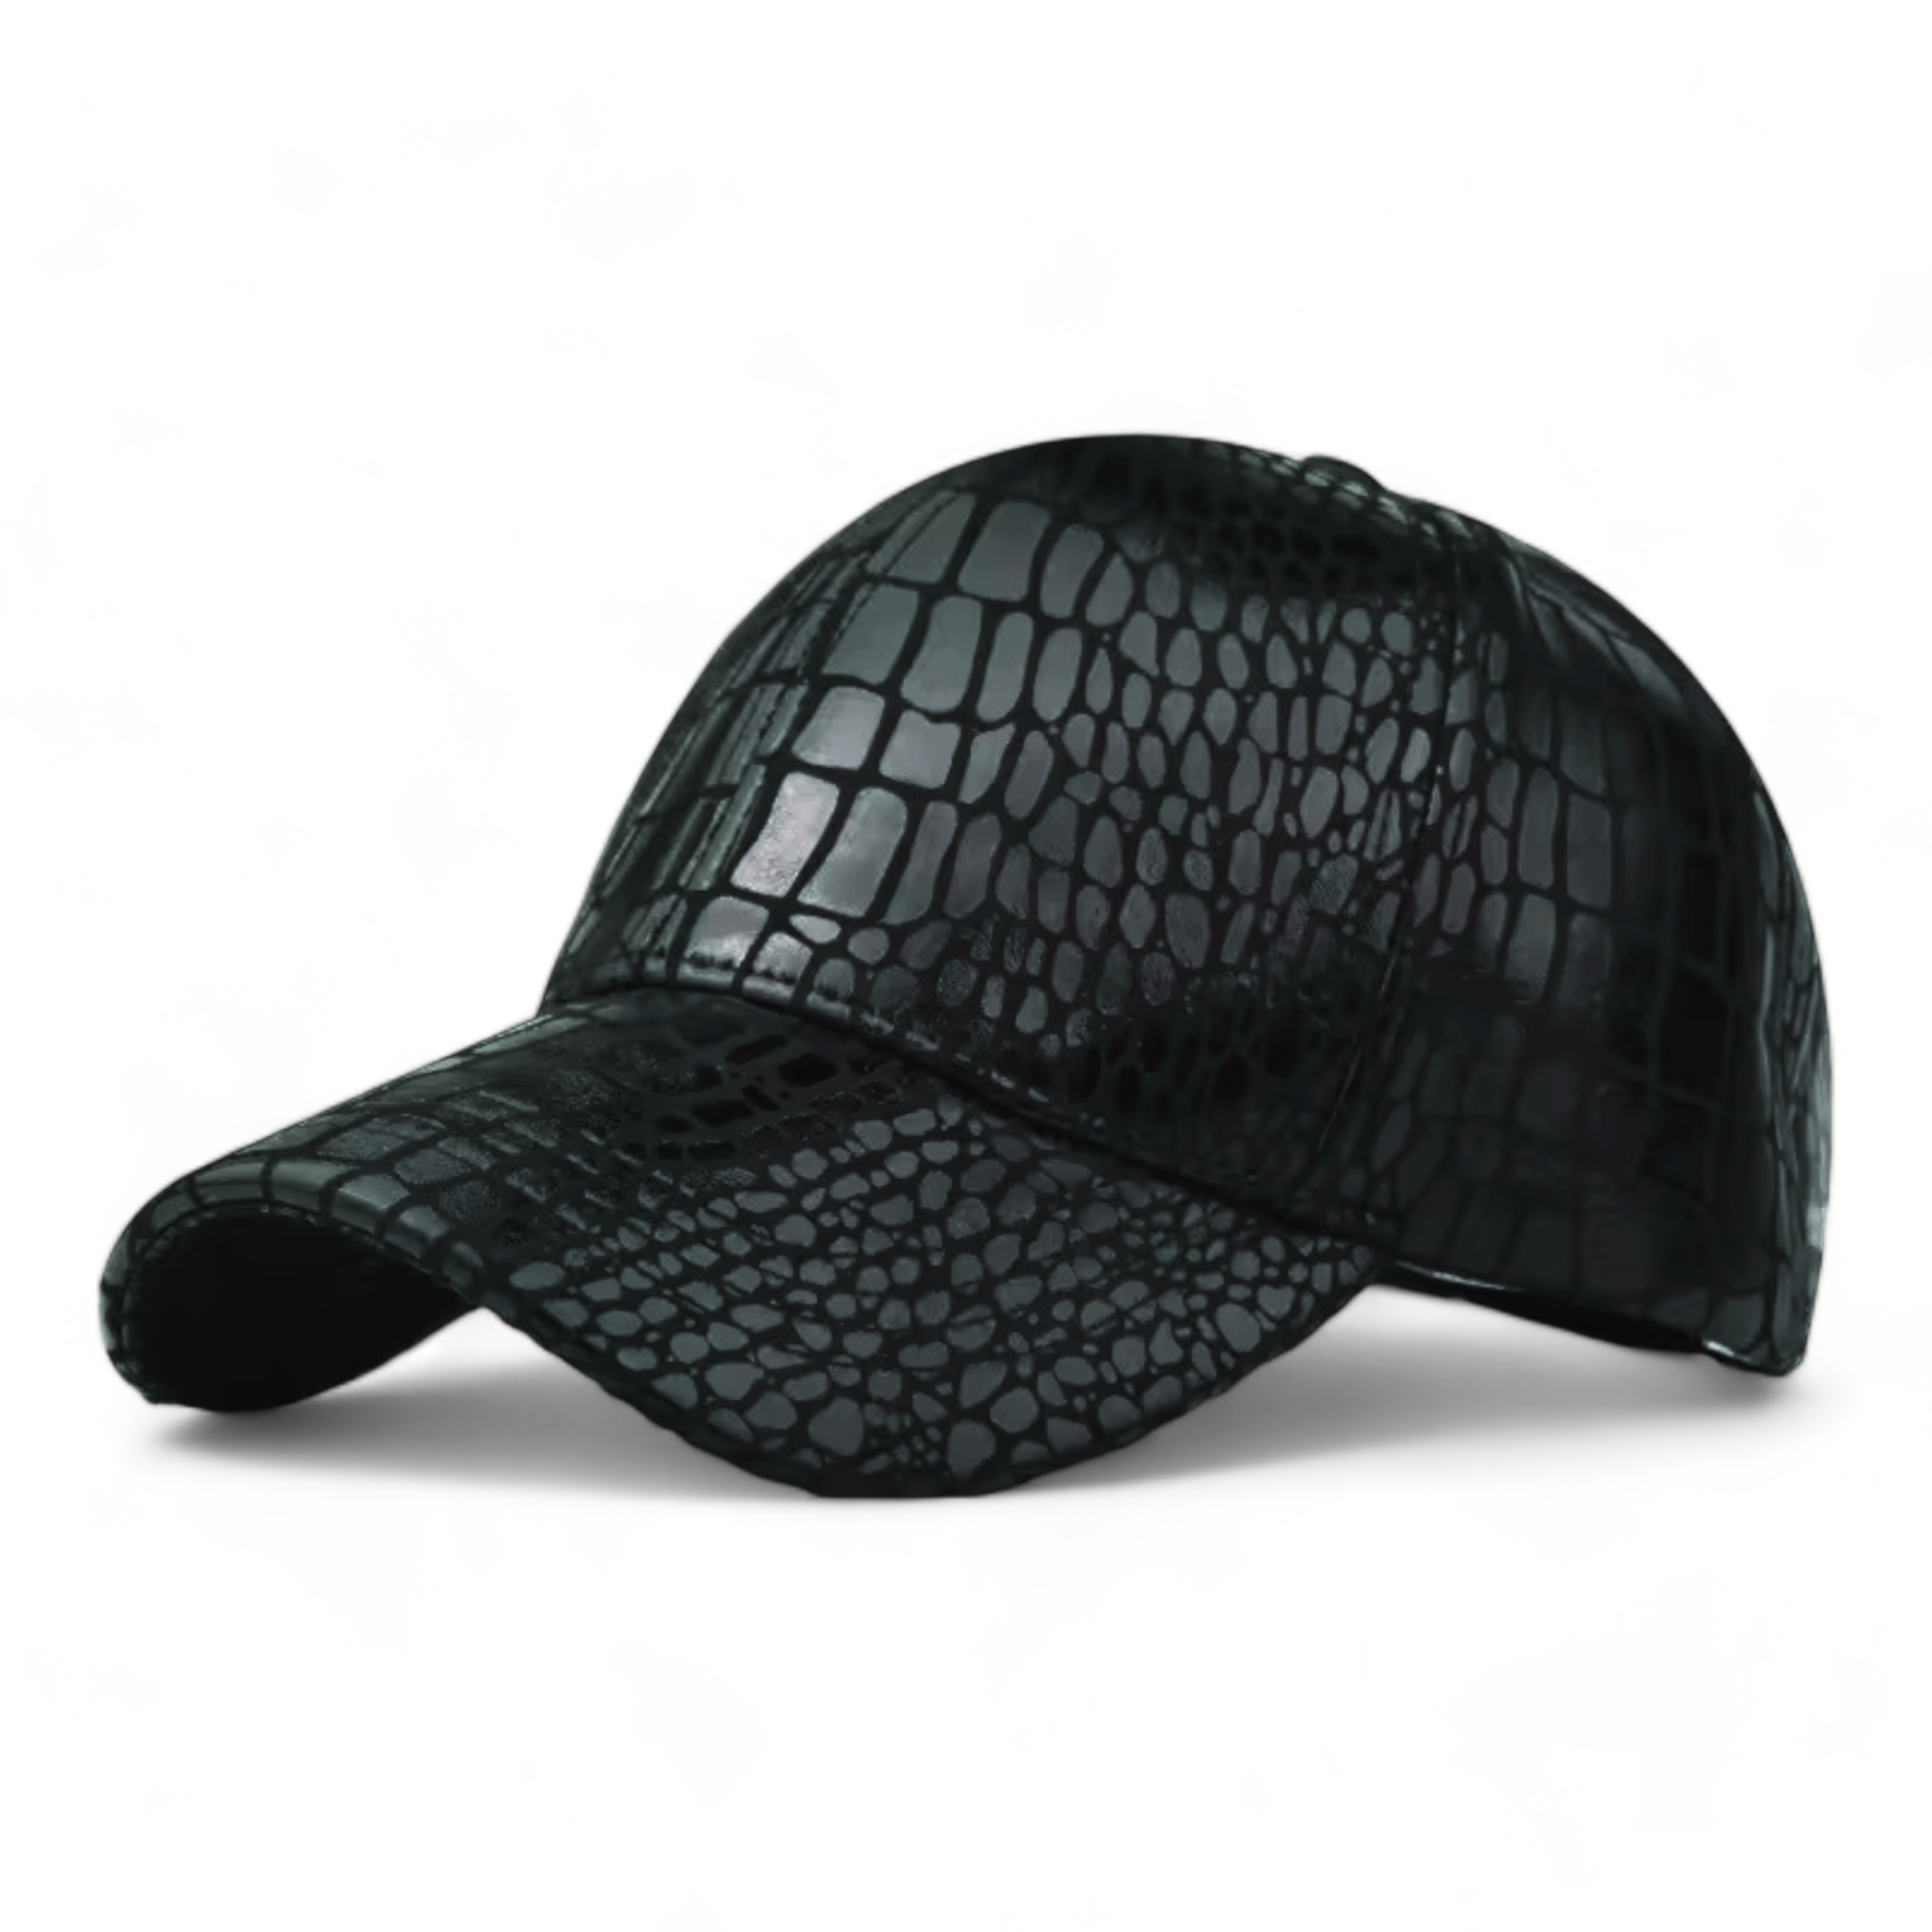 Chokore Crocodile Skin Print Leather Baseball Cap (Black)